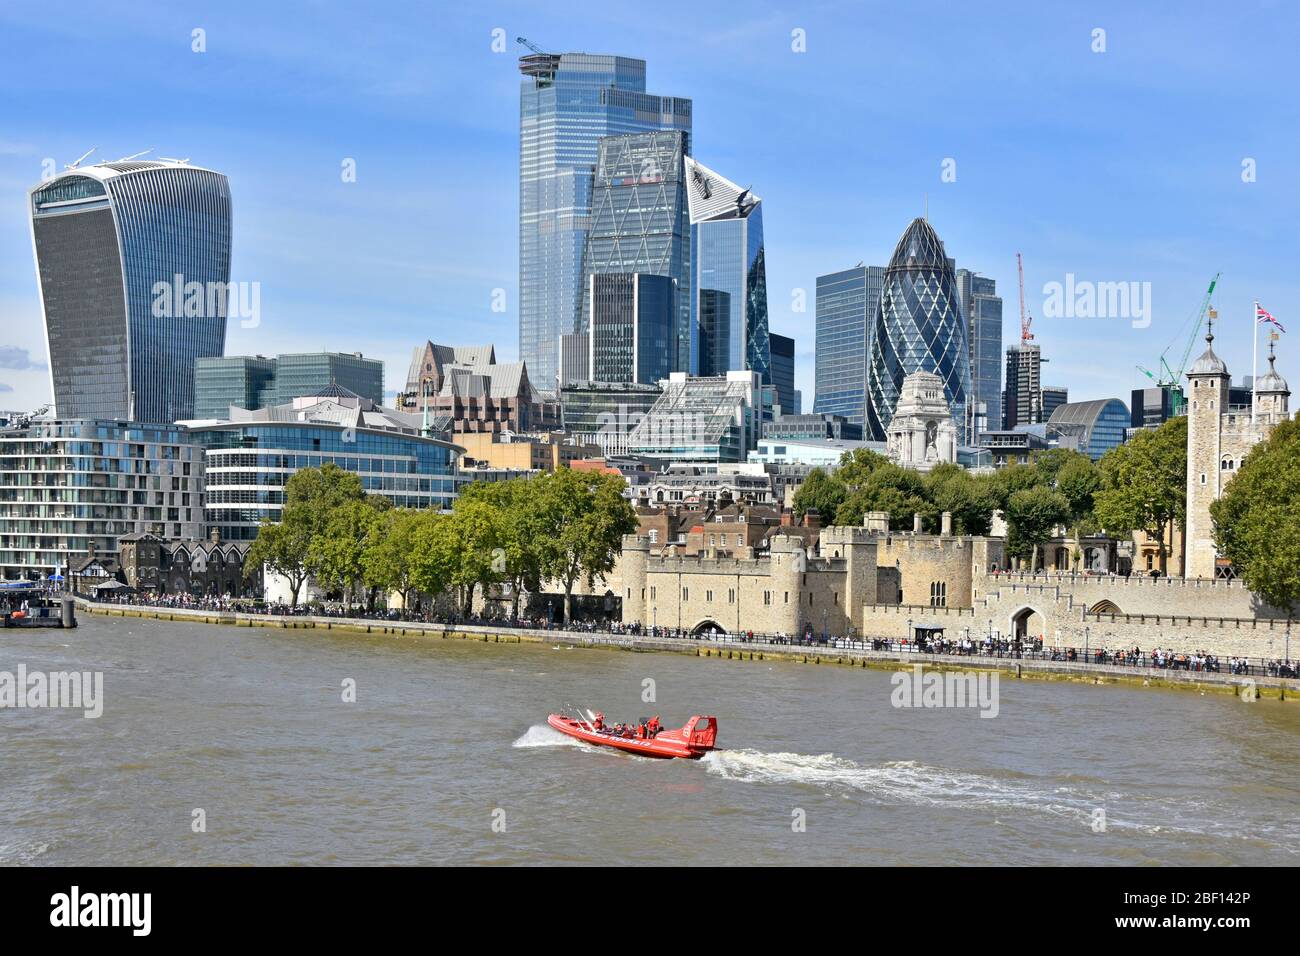 Thames Rockets Speedboat Business betreiben schnelle RIB Sightseeing Touren auf der Themse vorbei an historischen Tower of London & moderne City Skyline England UK Stockfoto